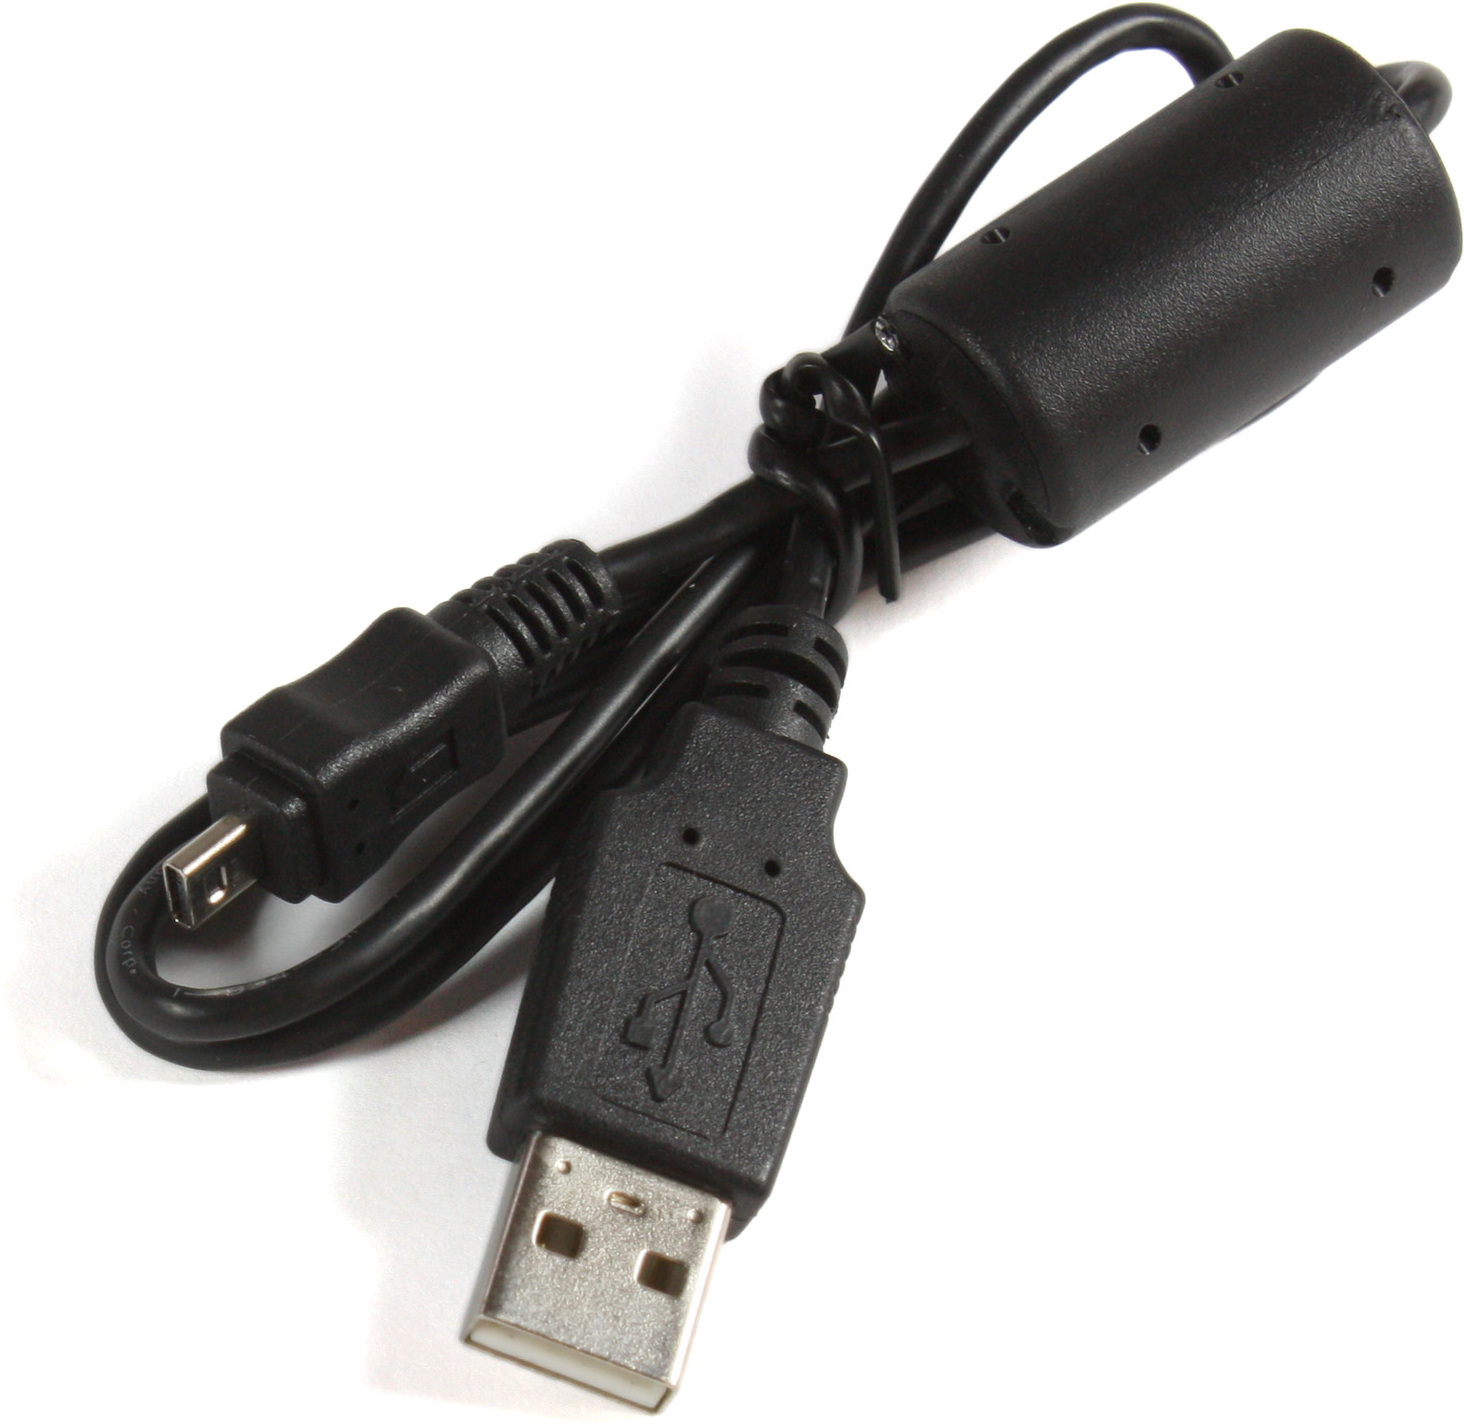 DSC-H300 Kabel Sony sonstige USB-Ladekabel Original schwarz Sony, für SONY